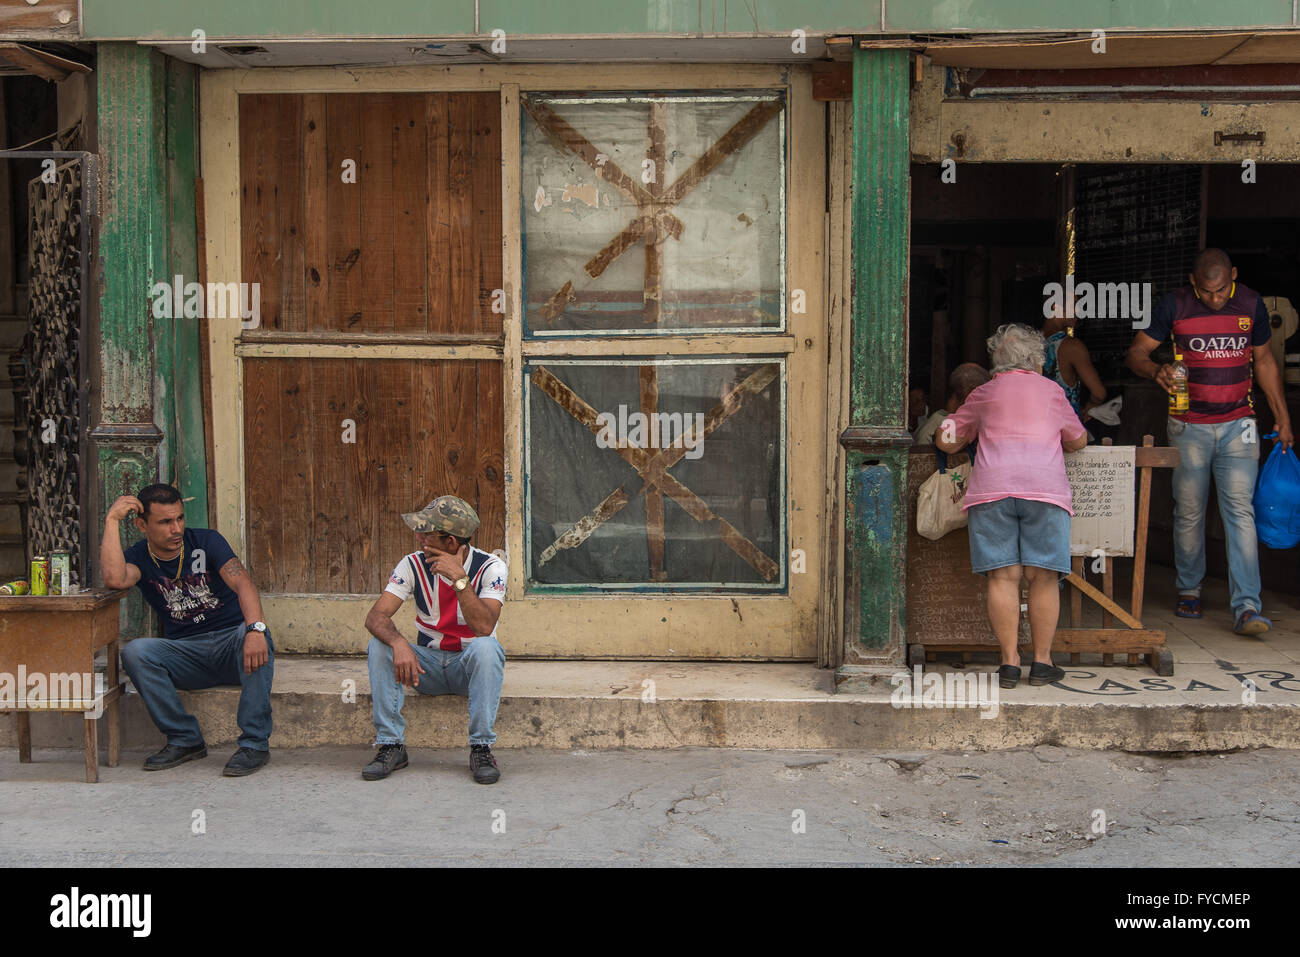 Kubanische Einheimischen gehen über ihr täglichen Leben in den Straßen von Alt-Havanna, Kuba.  Sehr entspannt und ohne Eile. Stockfoto